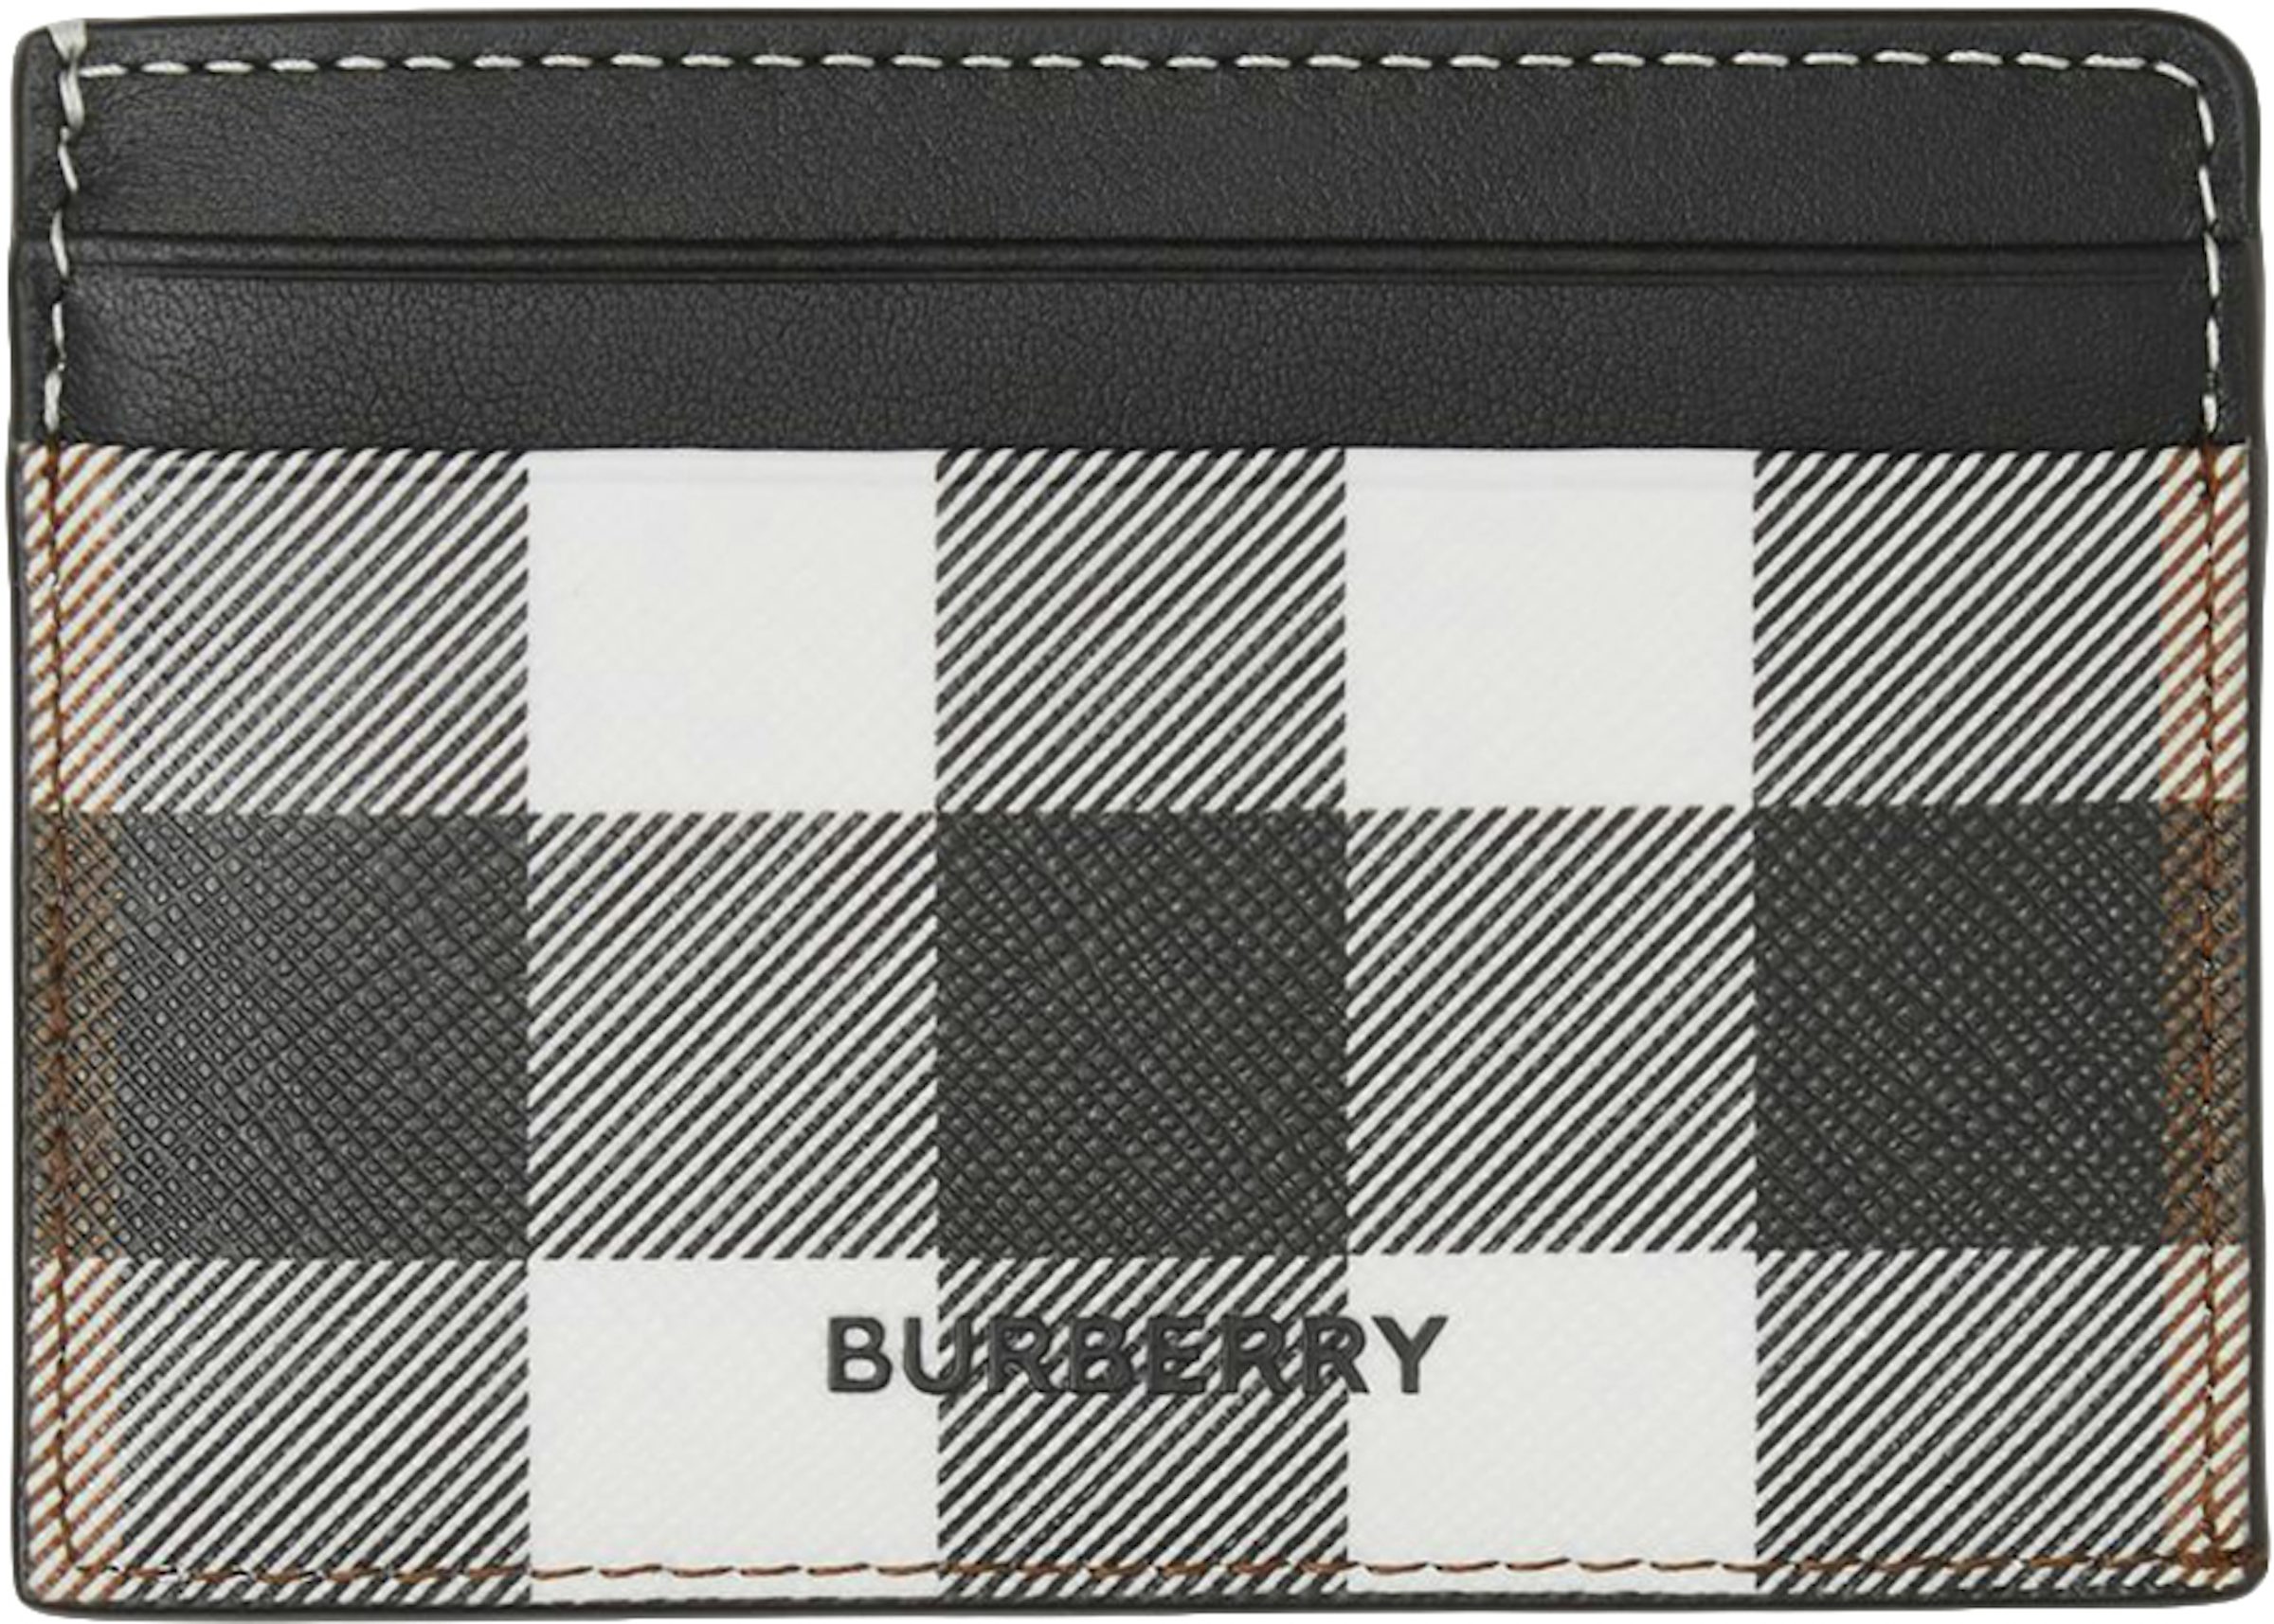 Burberry Check (7 slot) Card Case Dark Birch Brown in E-canvas